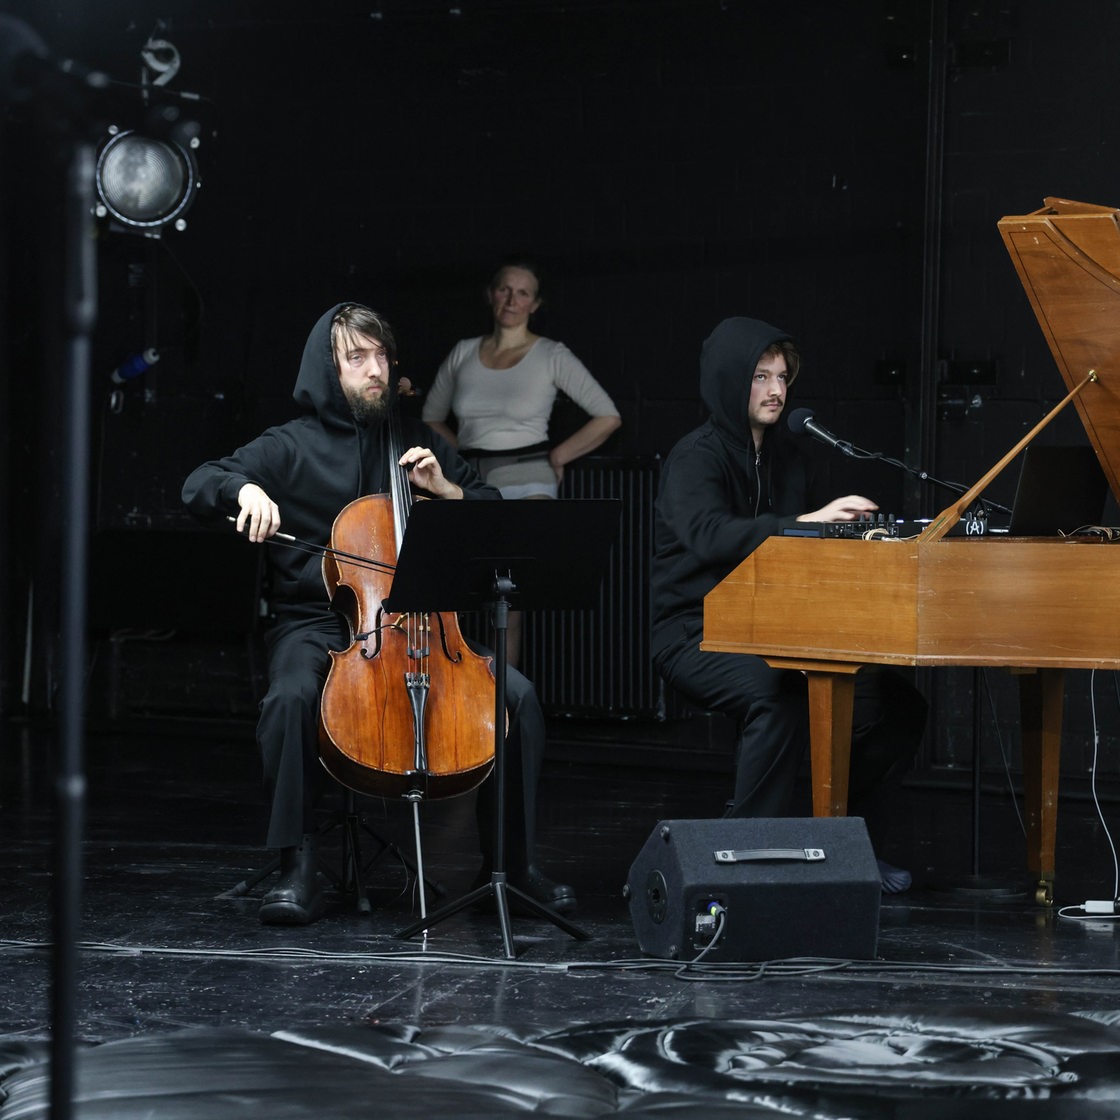 Matthieu Svetchine, Jo Flüeler, Irene Kleinschmidt und Moritz Widrig auf der Bühne